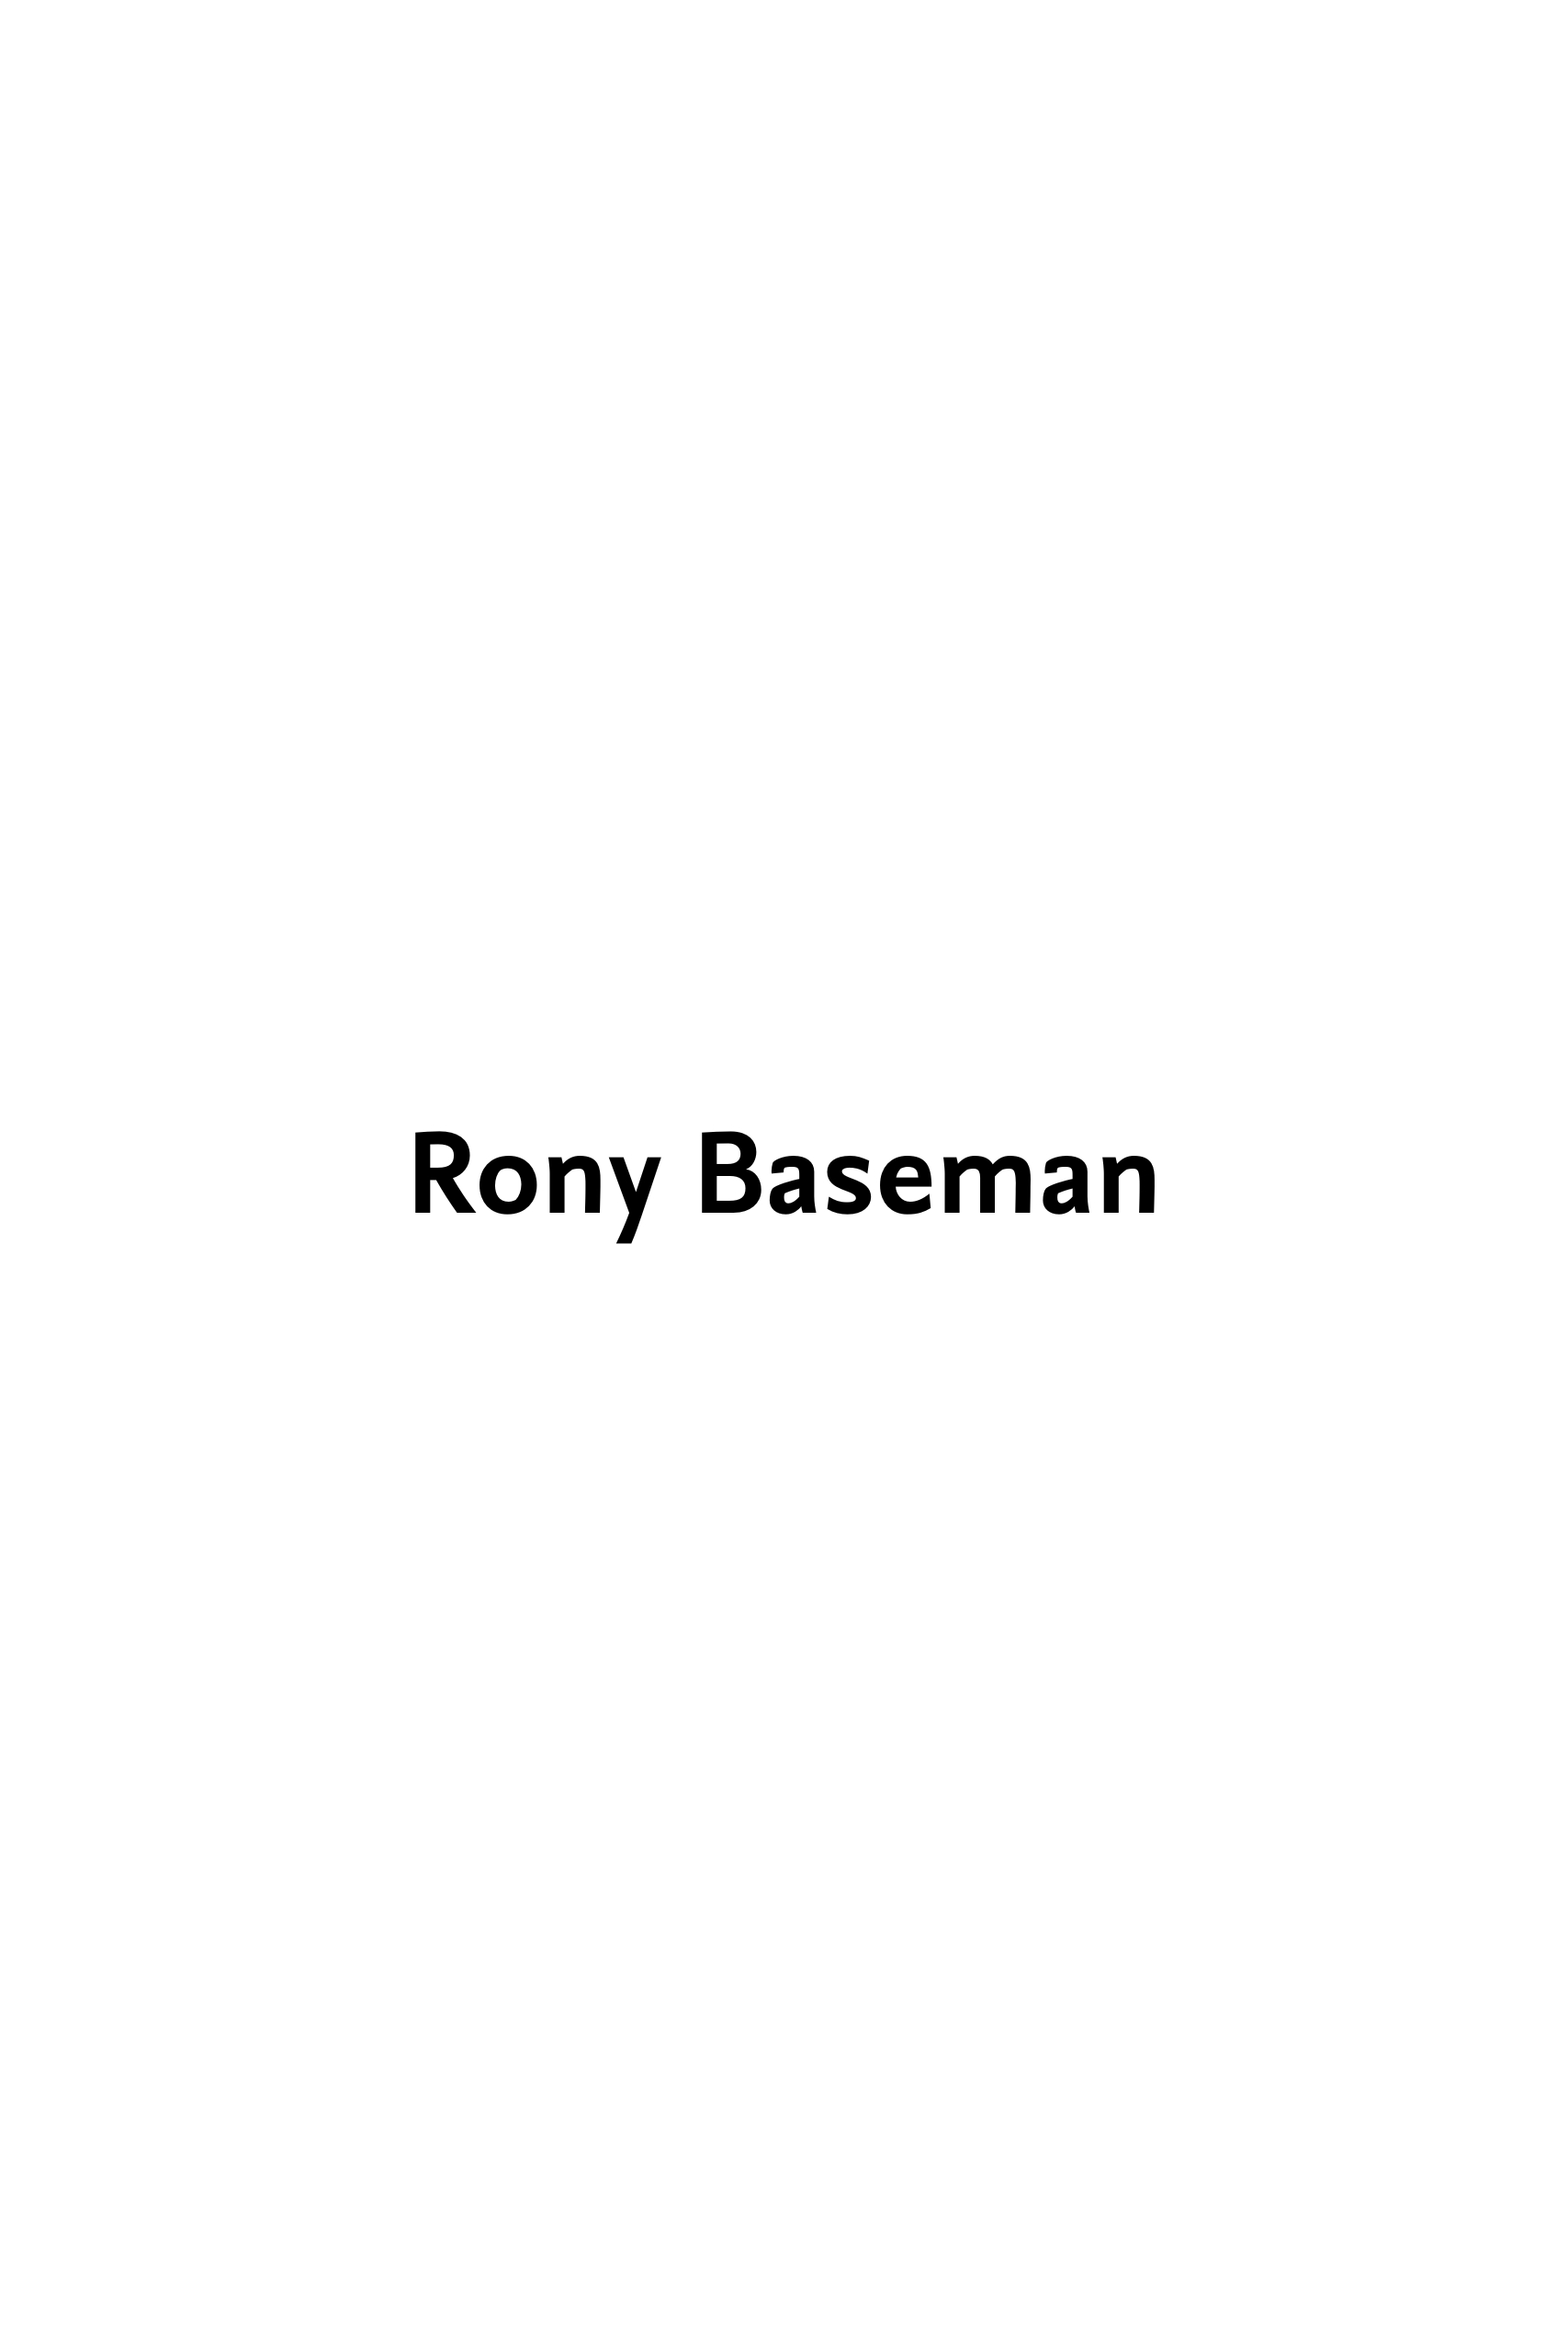 RONY BASEMAN